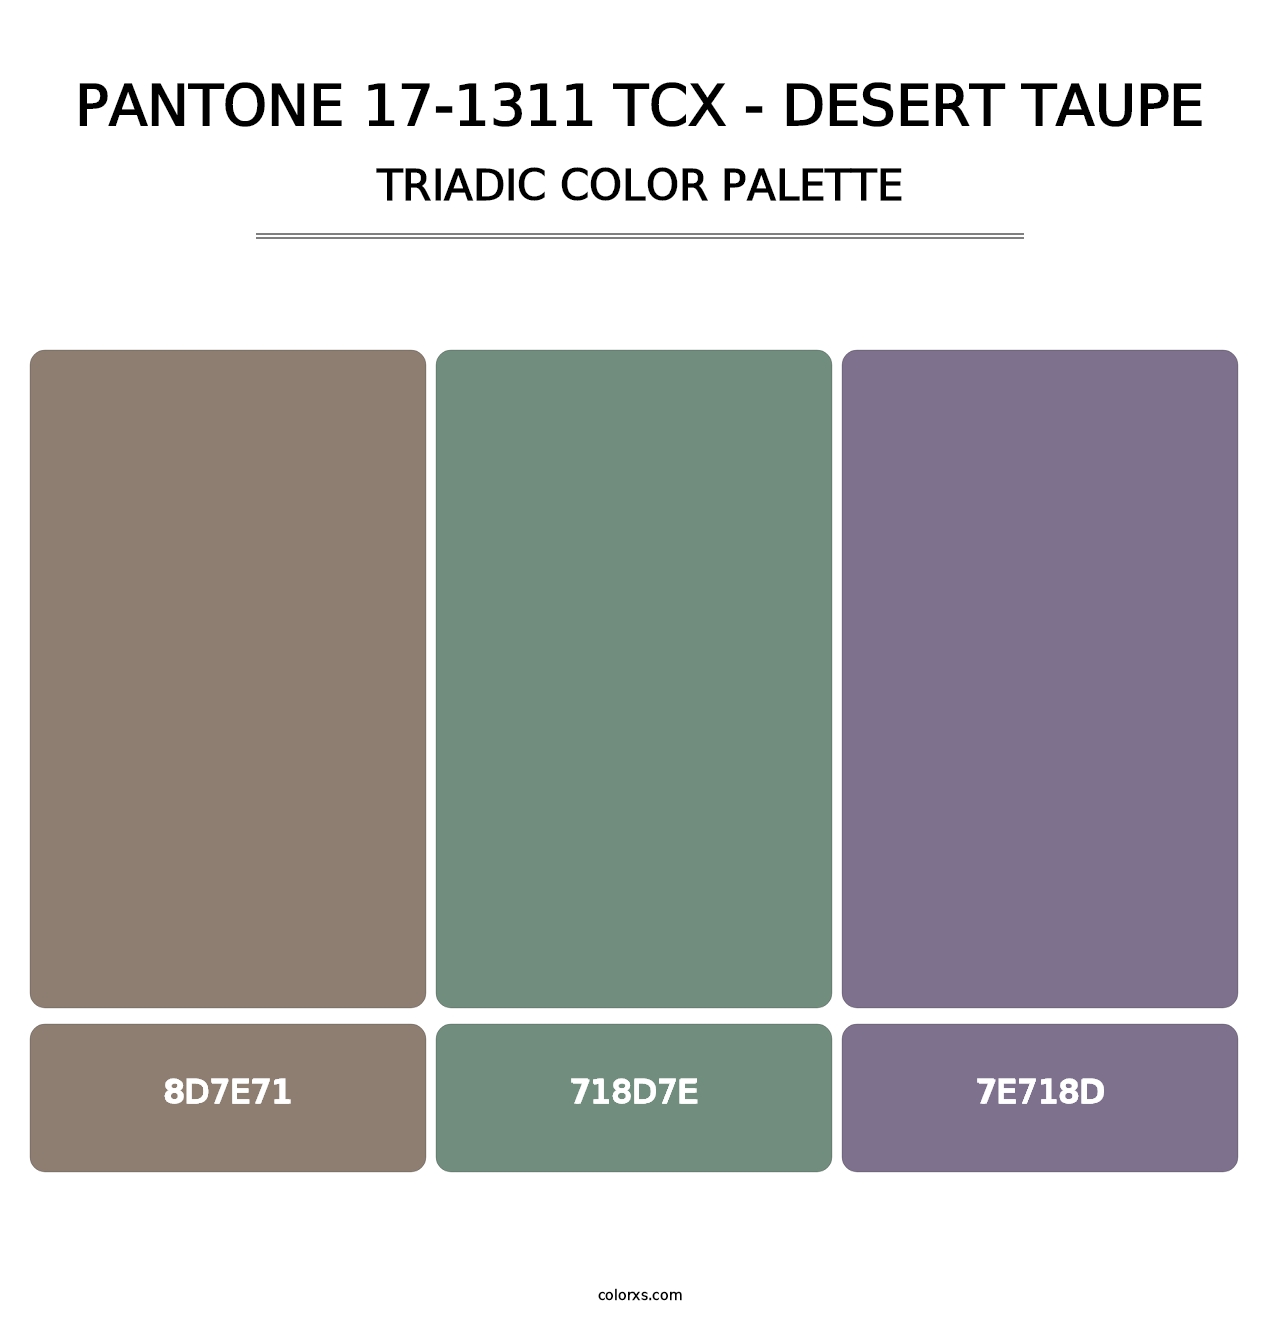 PANTONE 17-1311 TCX - Desert Taupe - Triadic Color Palette